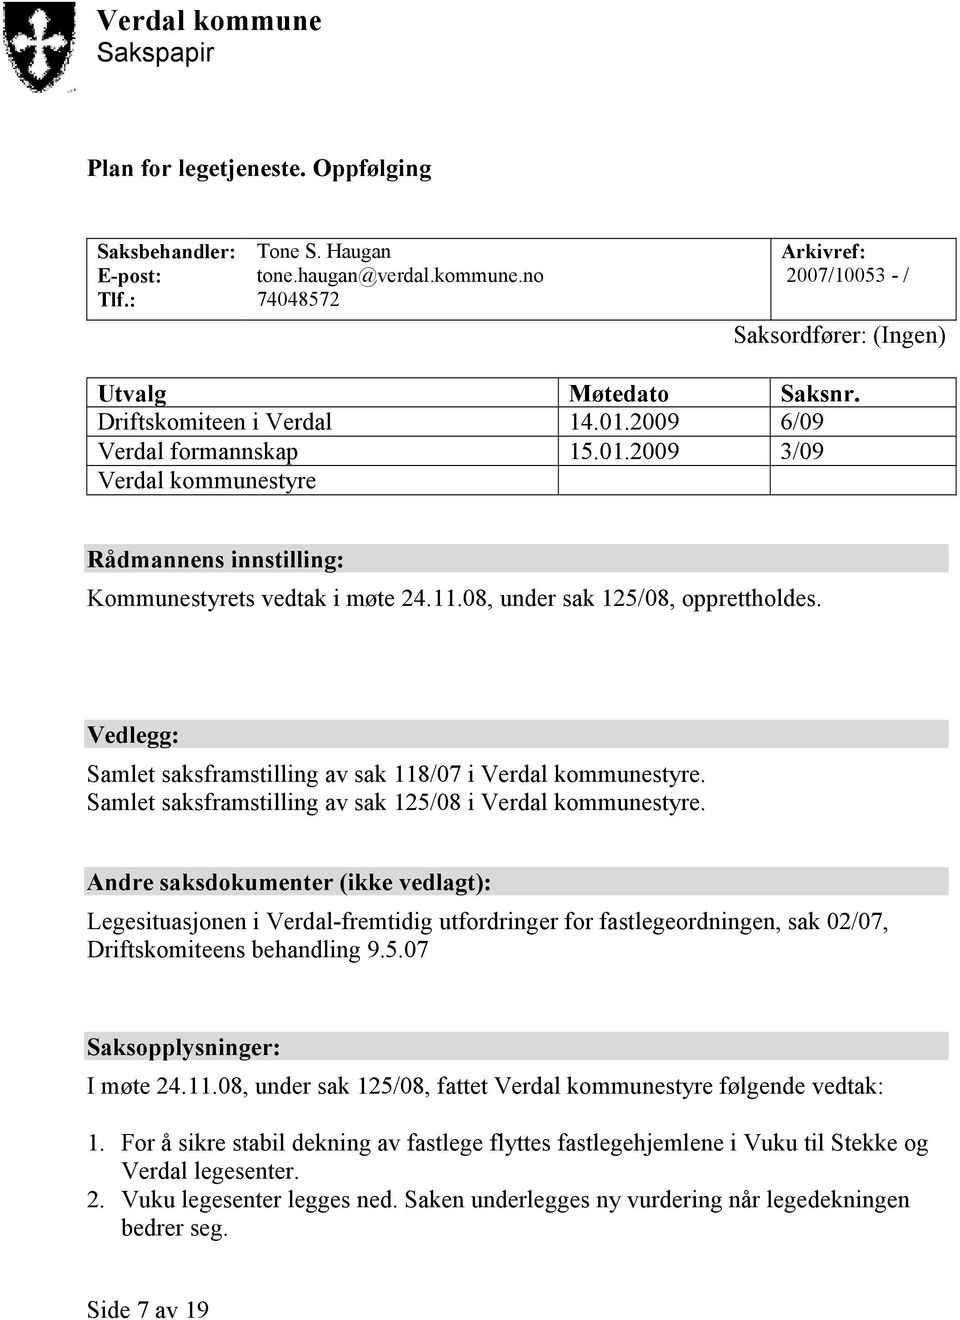 Vedlegg: Samlet saksframstilling av sak 118/07 i Verdal kommunestyre. Samlet saksframstilling av sak 125/08 i Verdal kommunestyre.